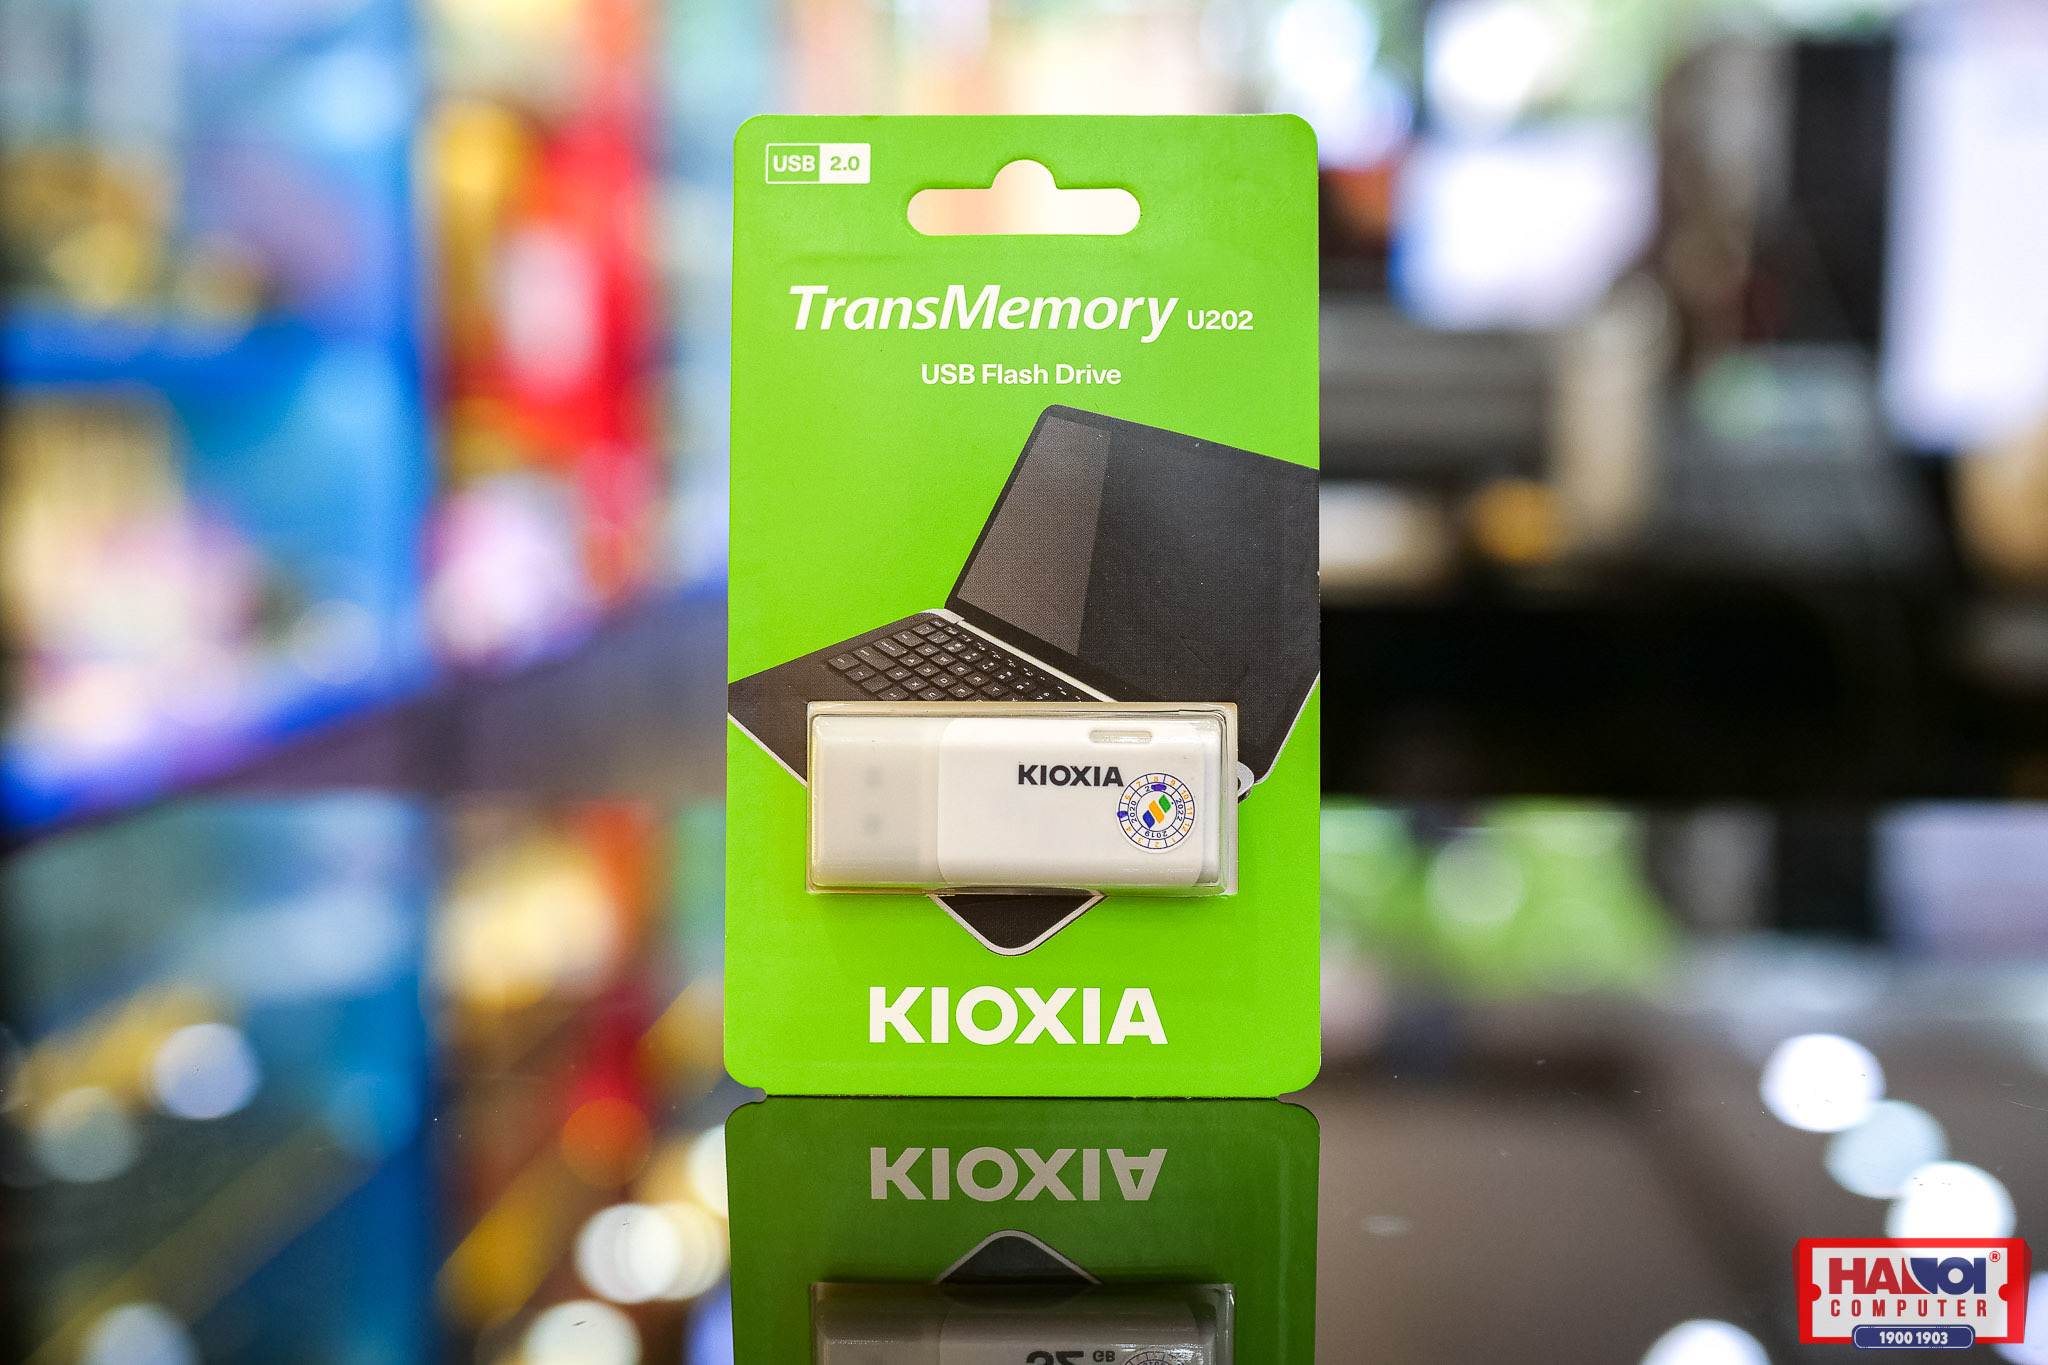 USB Kioxia 16GB 2.0 U202 White